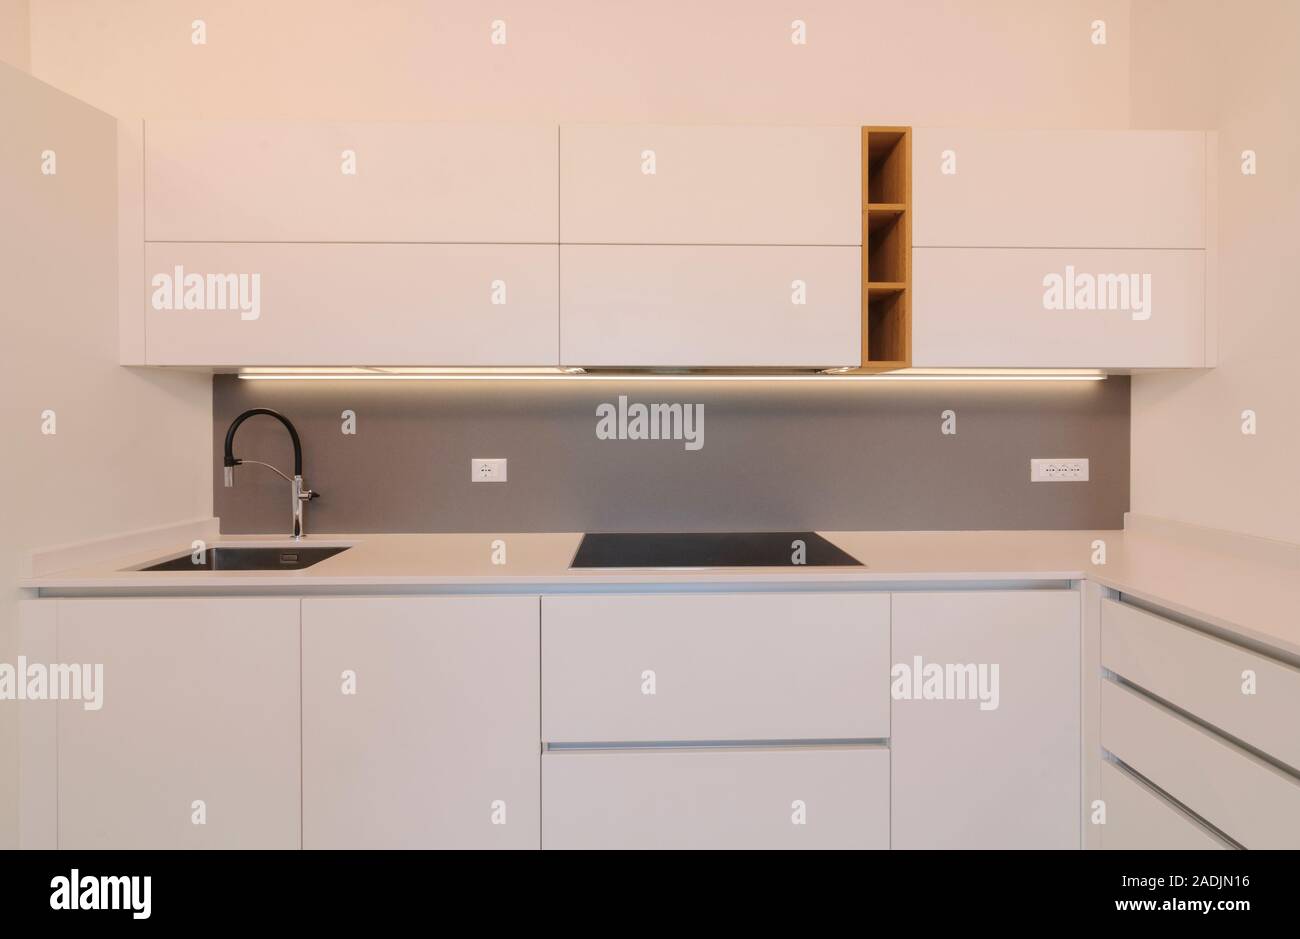 Cocina moderna y elegante interior con alacenas blancas, placa de inducción  y inserciones de madera. Estilo escandinavo contemporáneo Fotografía de  stock - Alamy